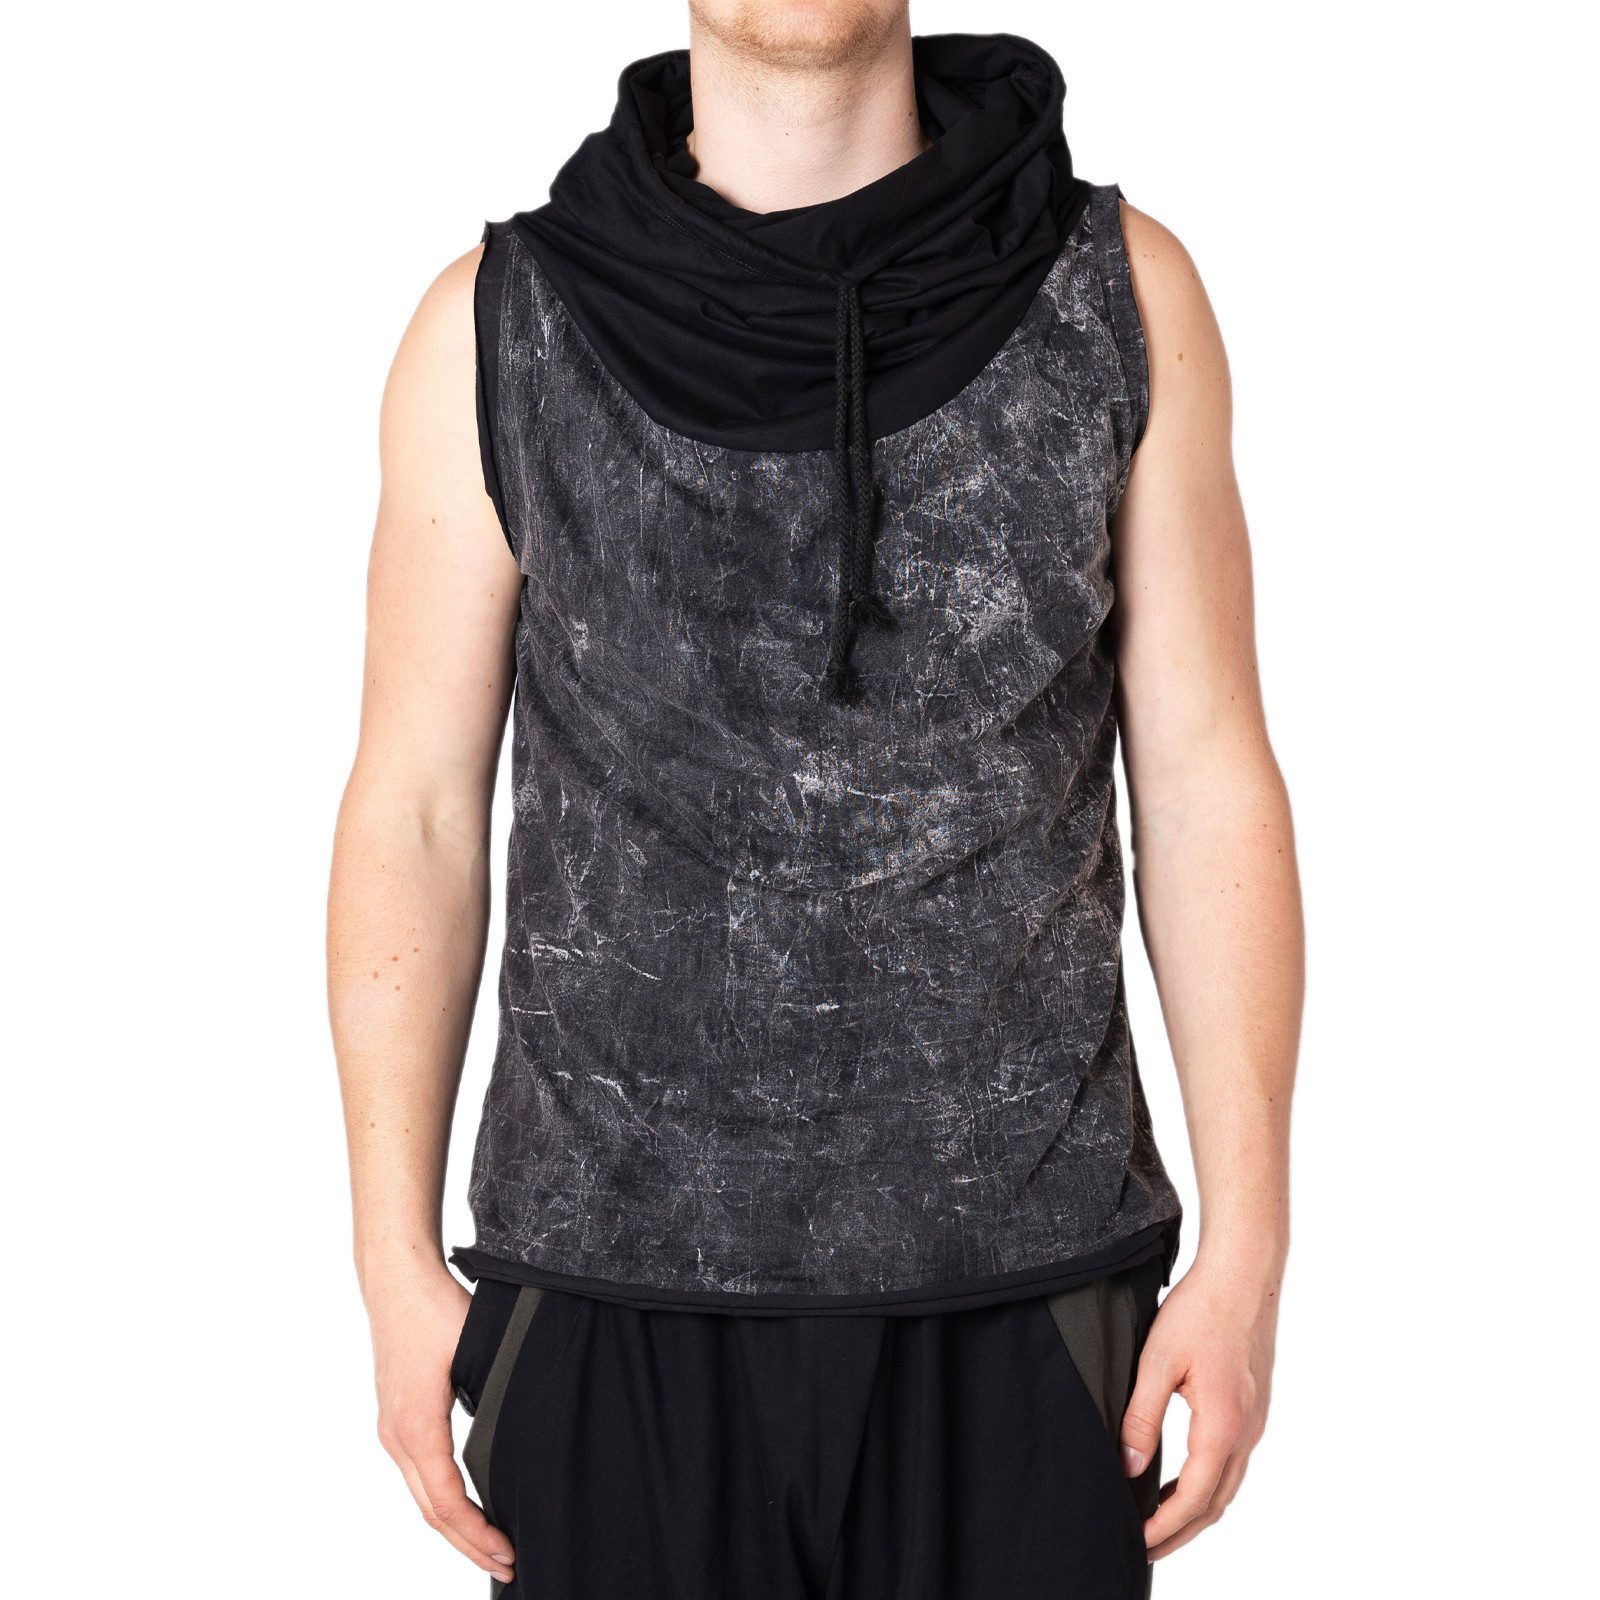 PANASIAM T-Shirt Trainingsshirt aus 100% Baumwolle ärmellos mit Kapuze Urban Tanktop Muskelshirt Kapuzenpullover mit Tunnelzug Hooded T-Shirt für Gym Sport